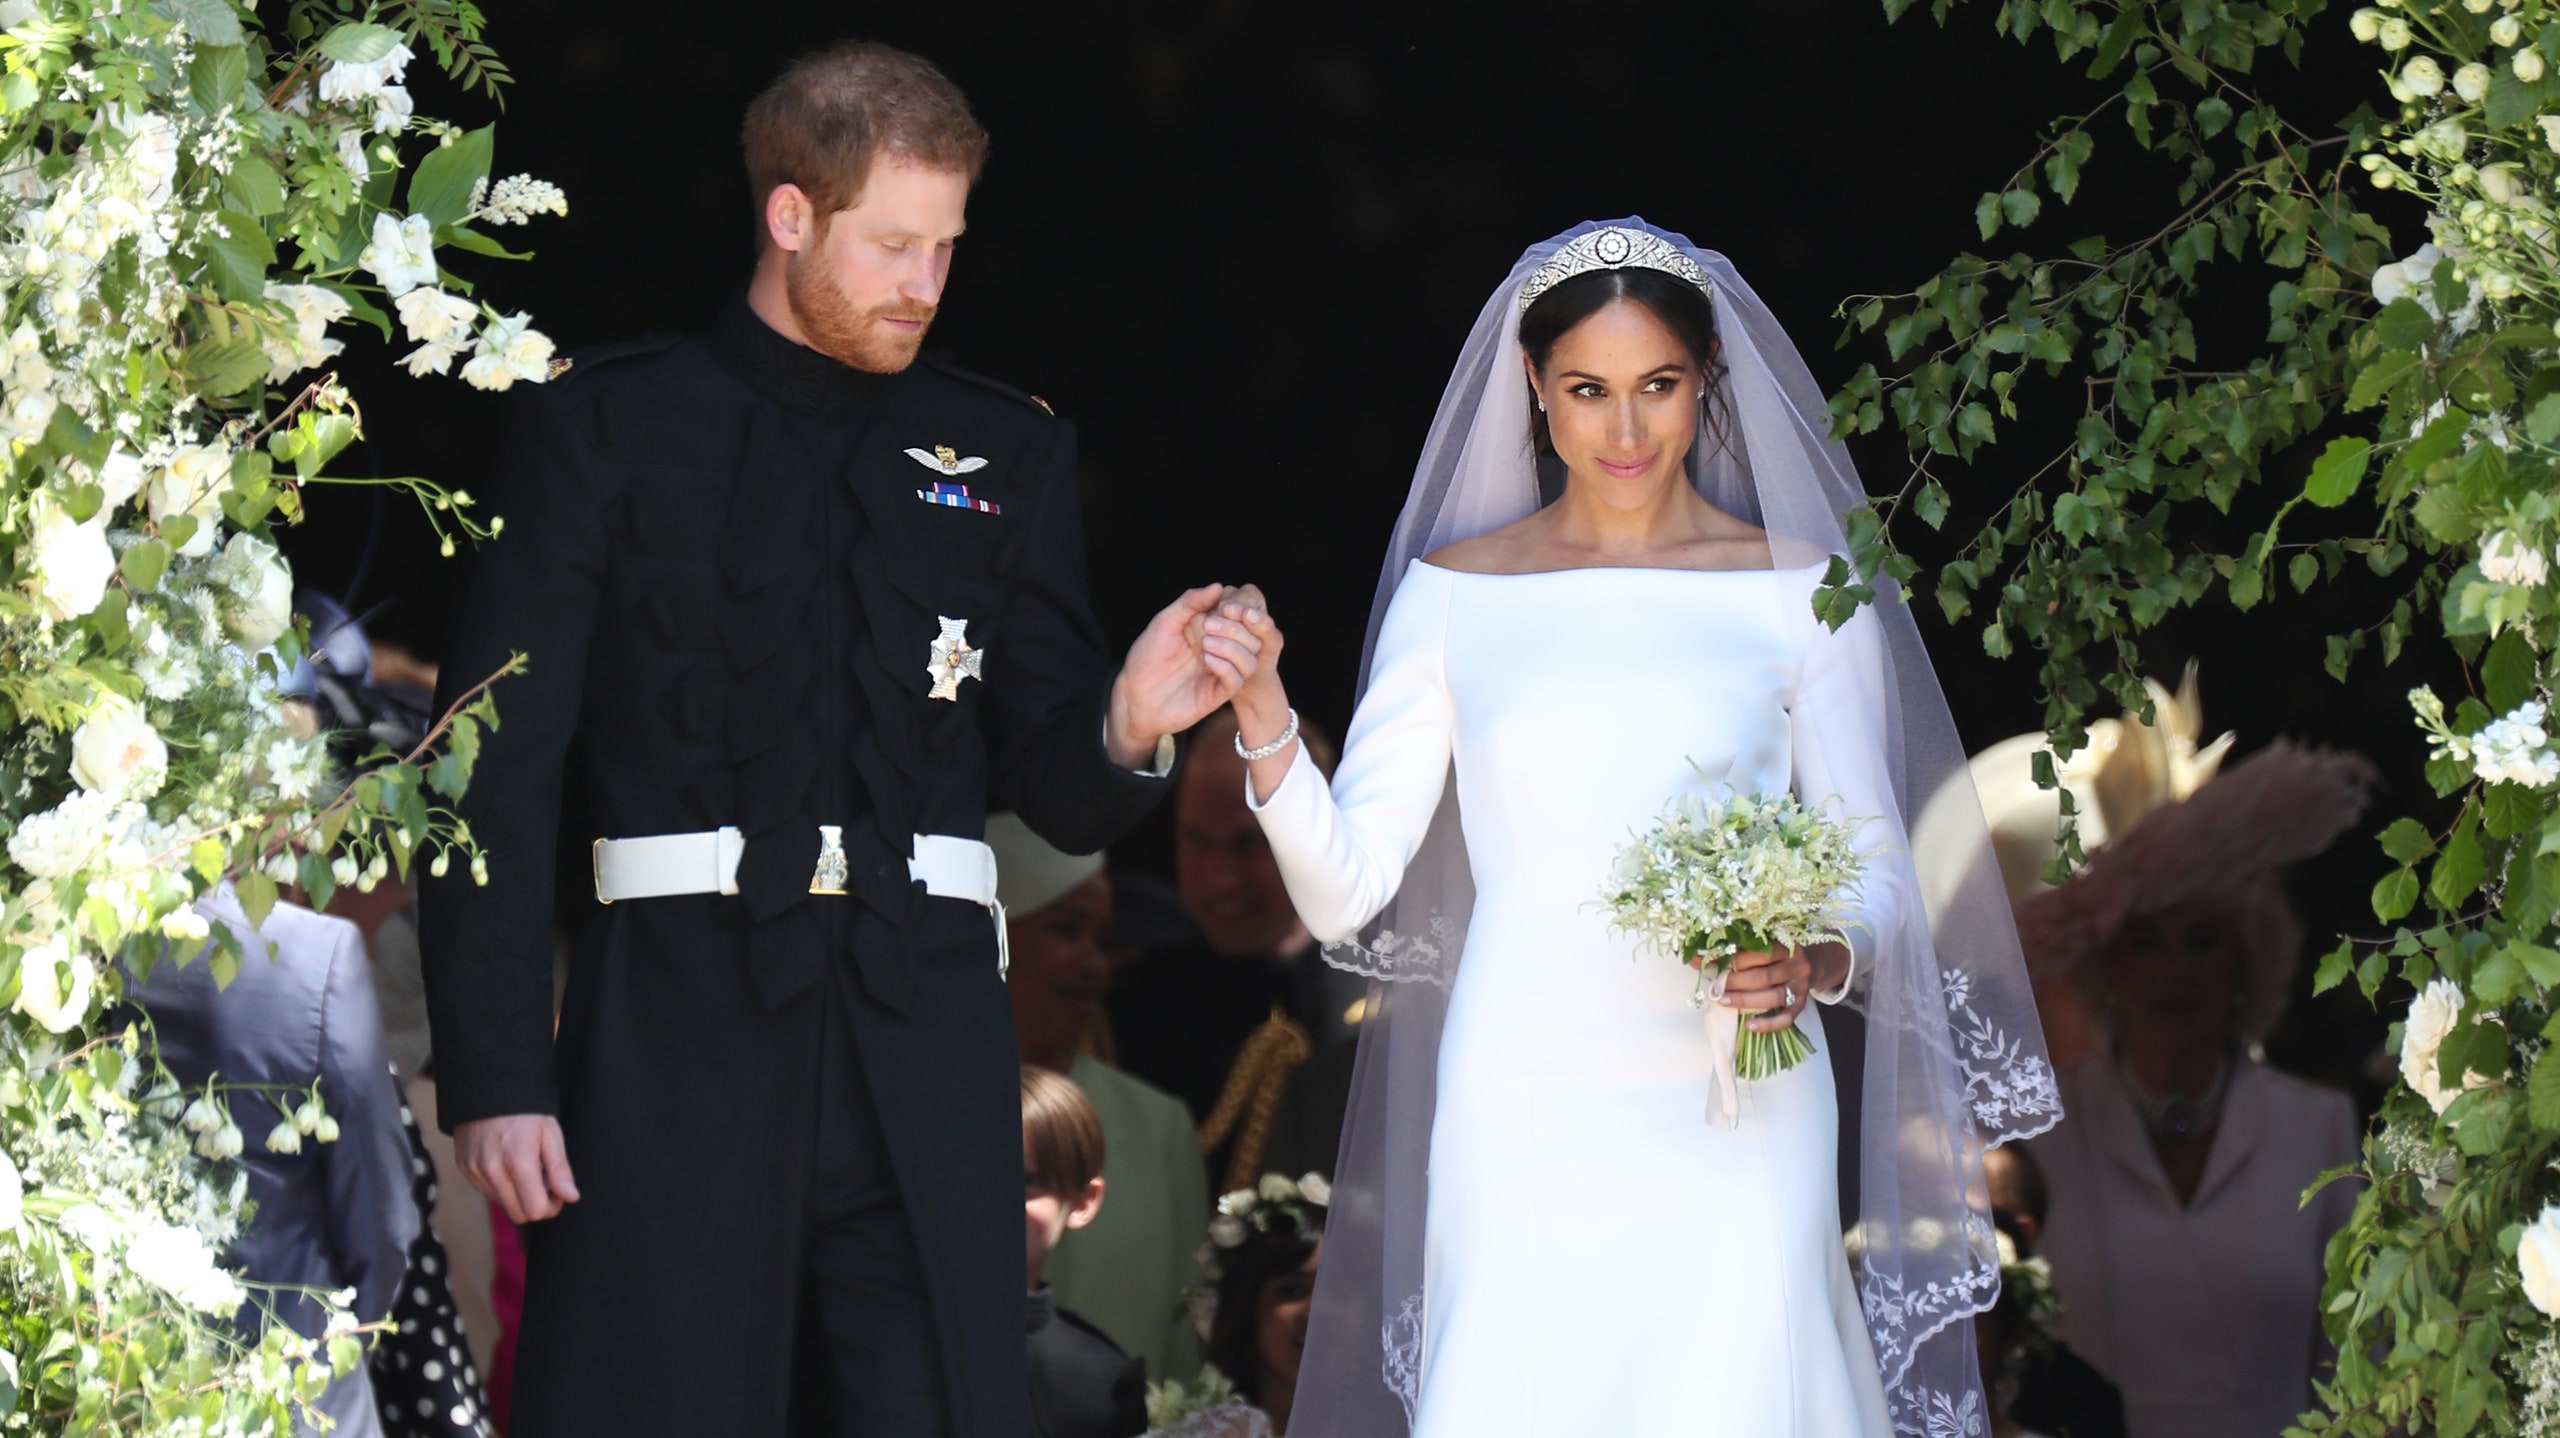 Цветы со свадьбы принца Гарри и Меган Маркл передали пациентам хосписа Святого Иосифа в Лондоне